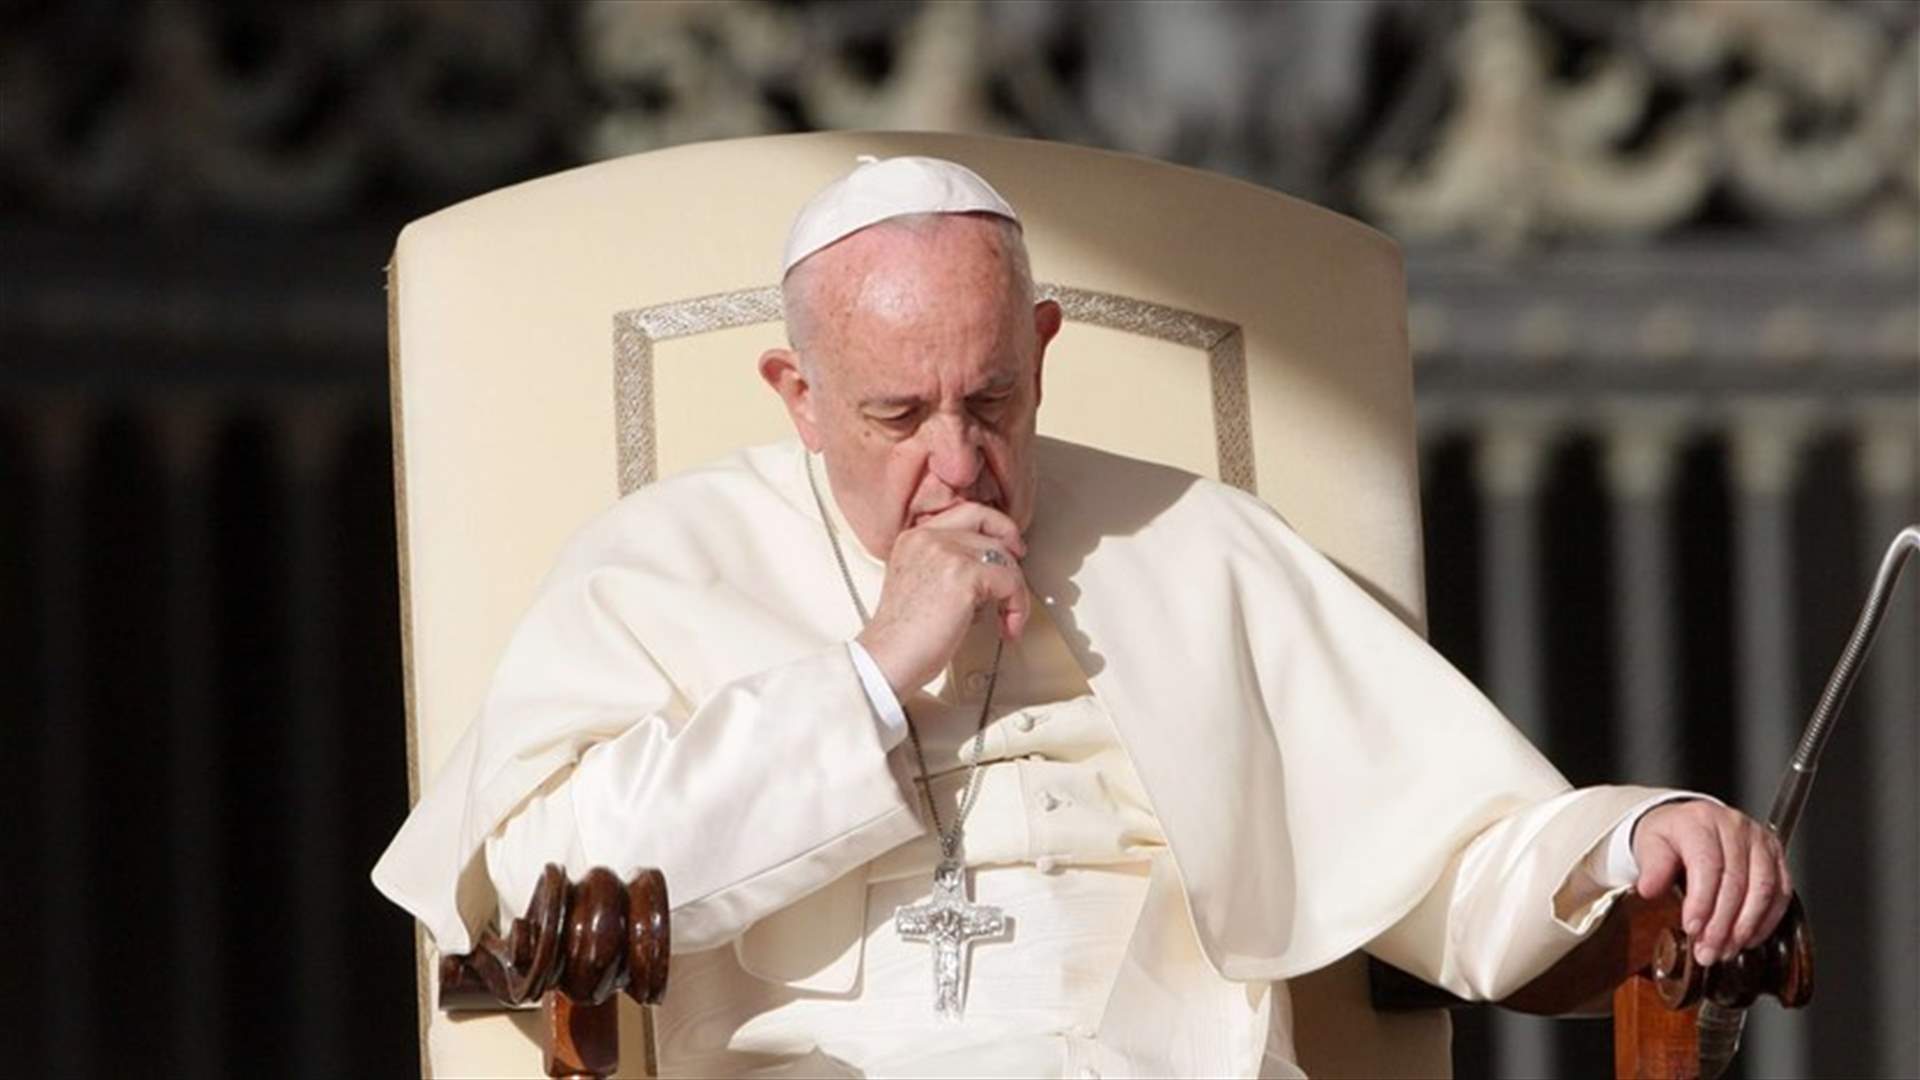 البابا فرنسيس يلغي مراسم تستهل موسم عيد الميلاد بسبب كوفيد-19